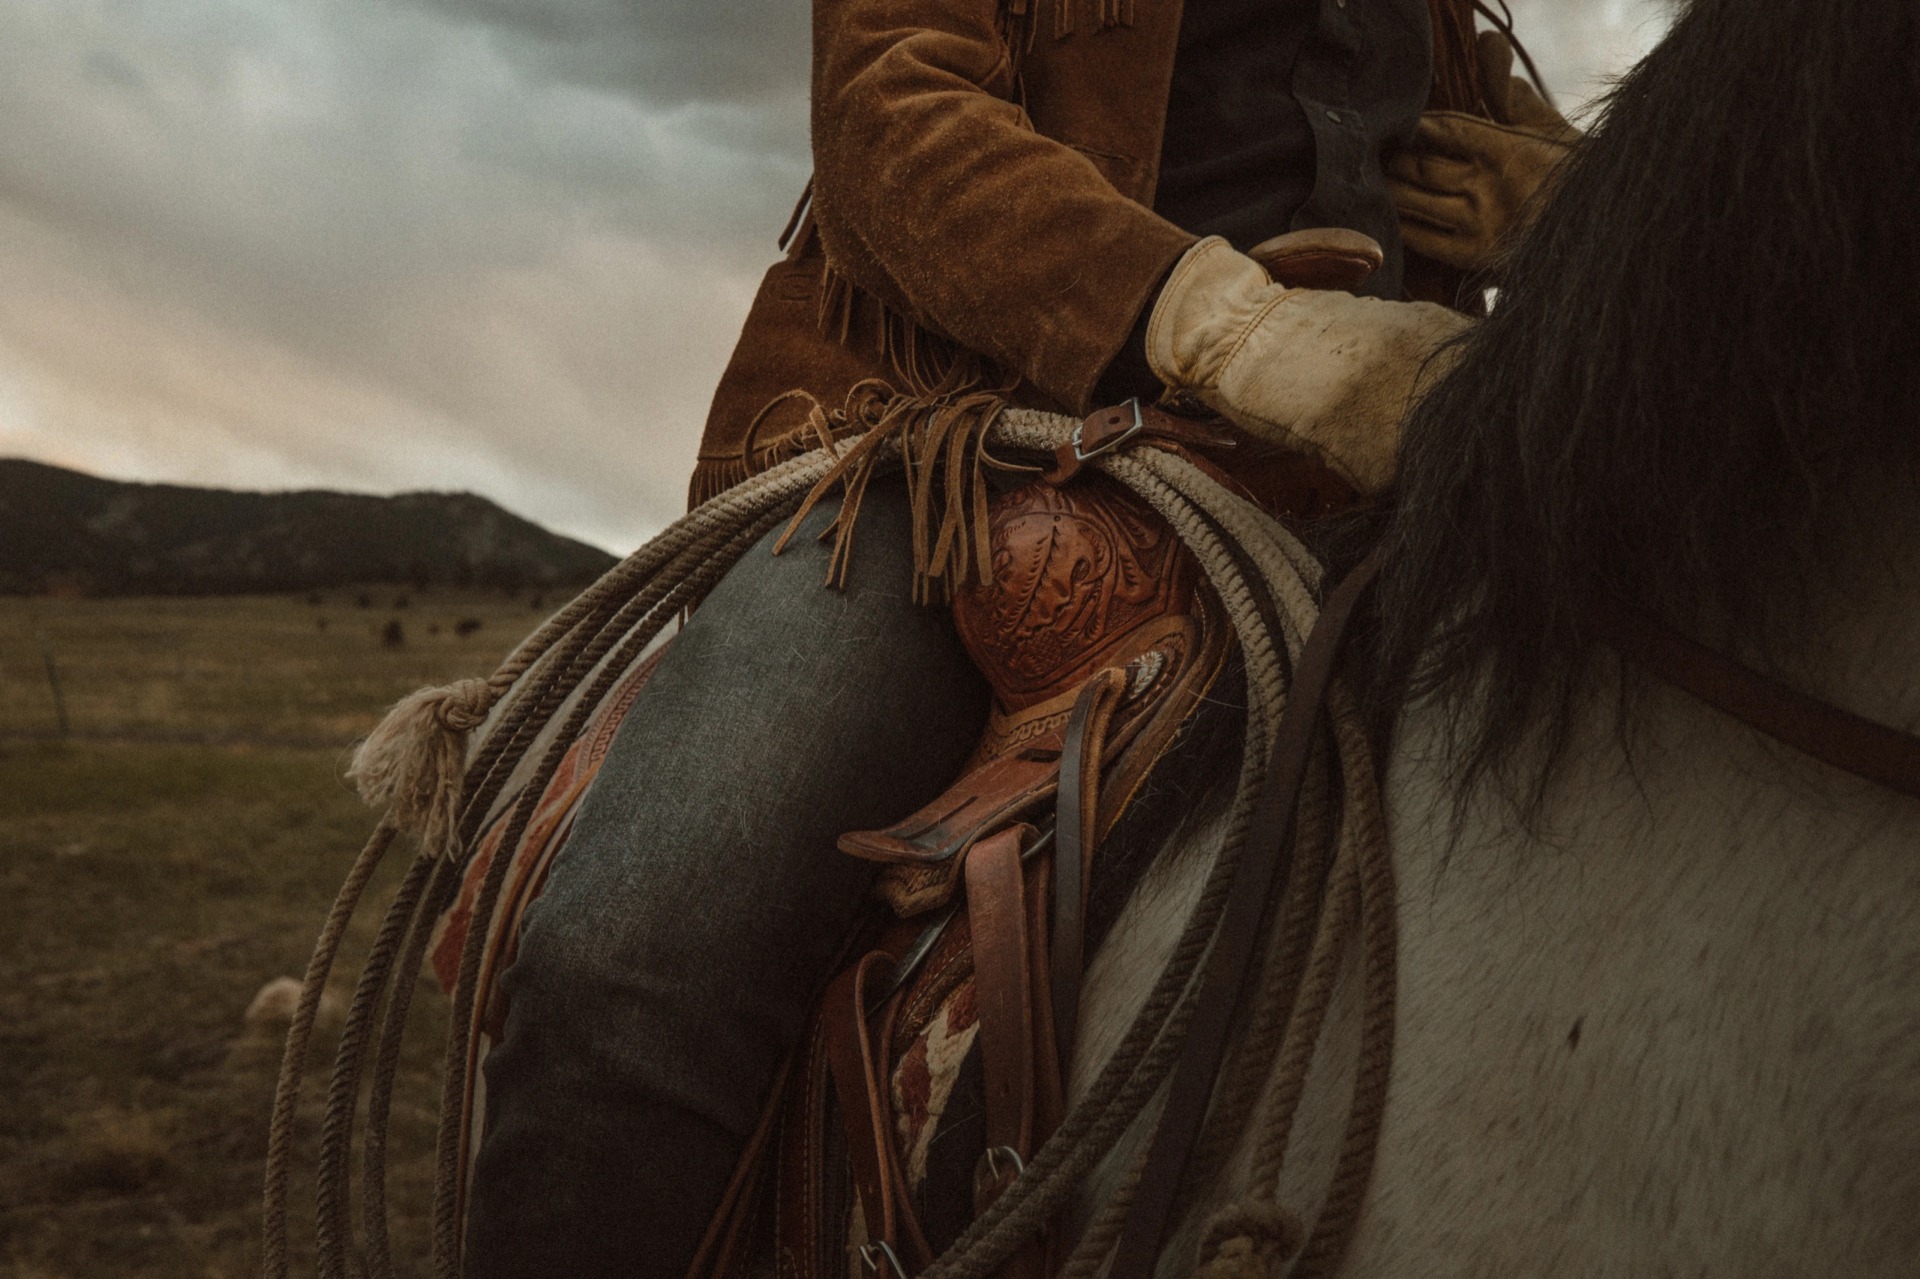 Cowboy On a Horse